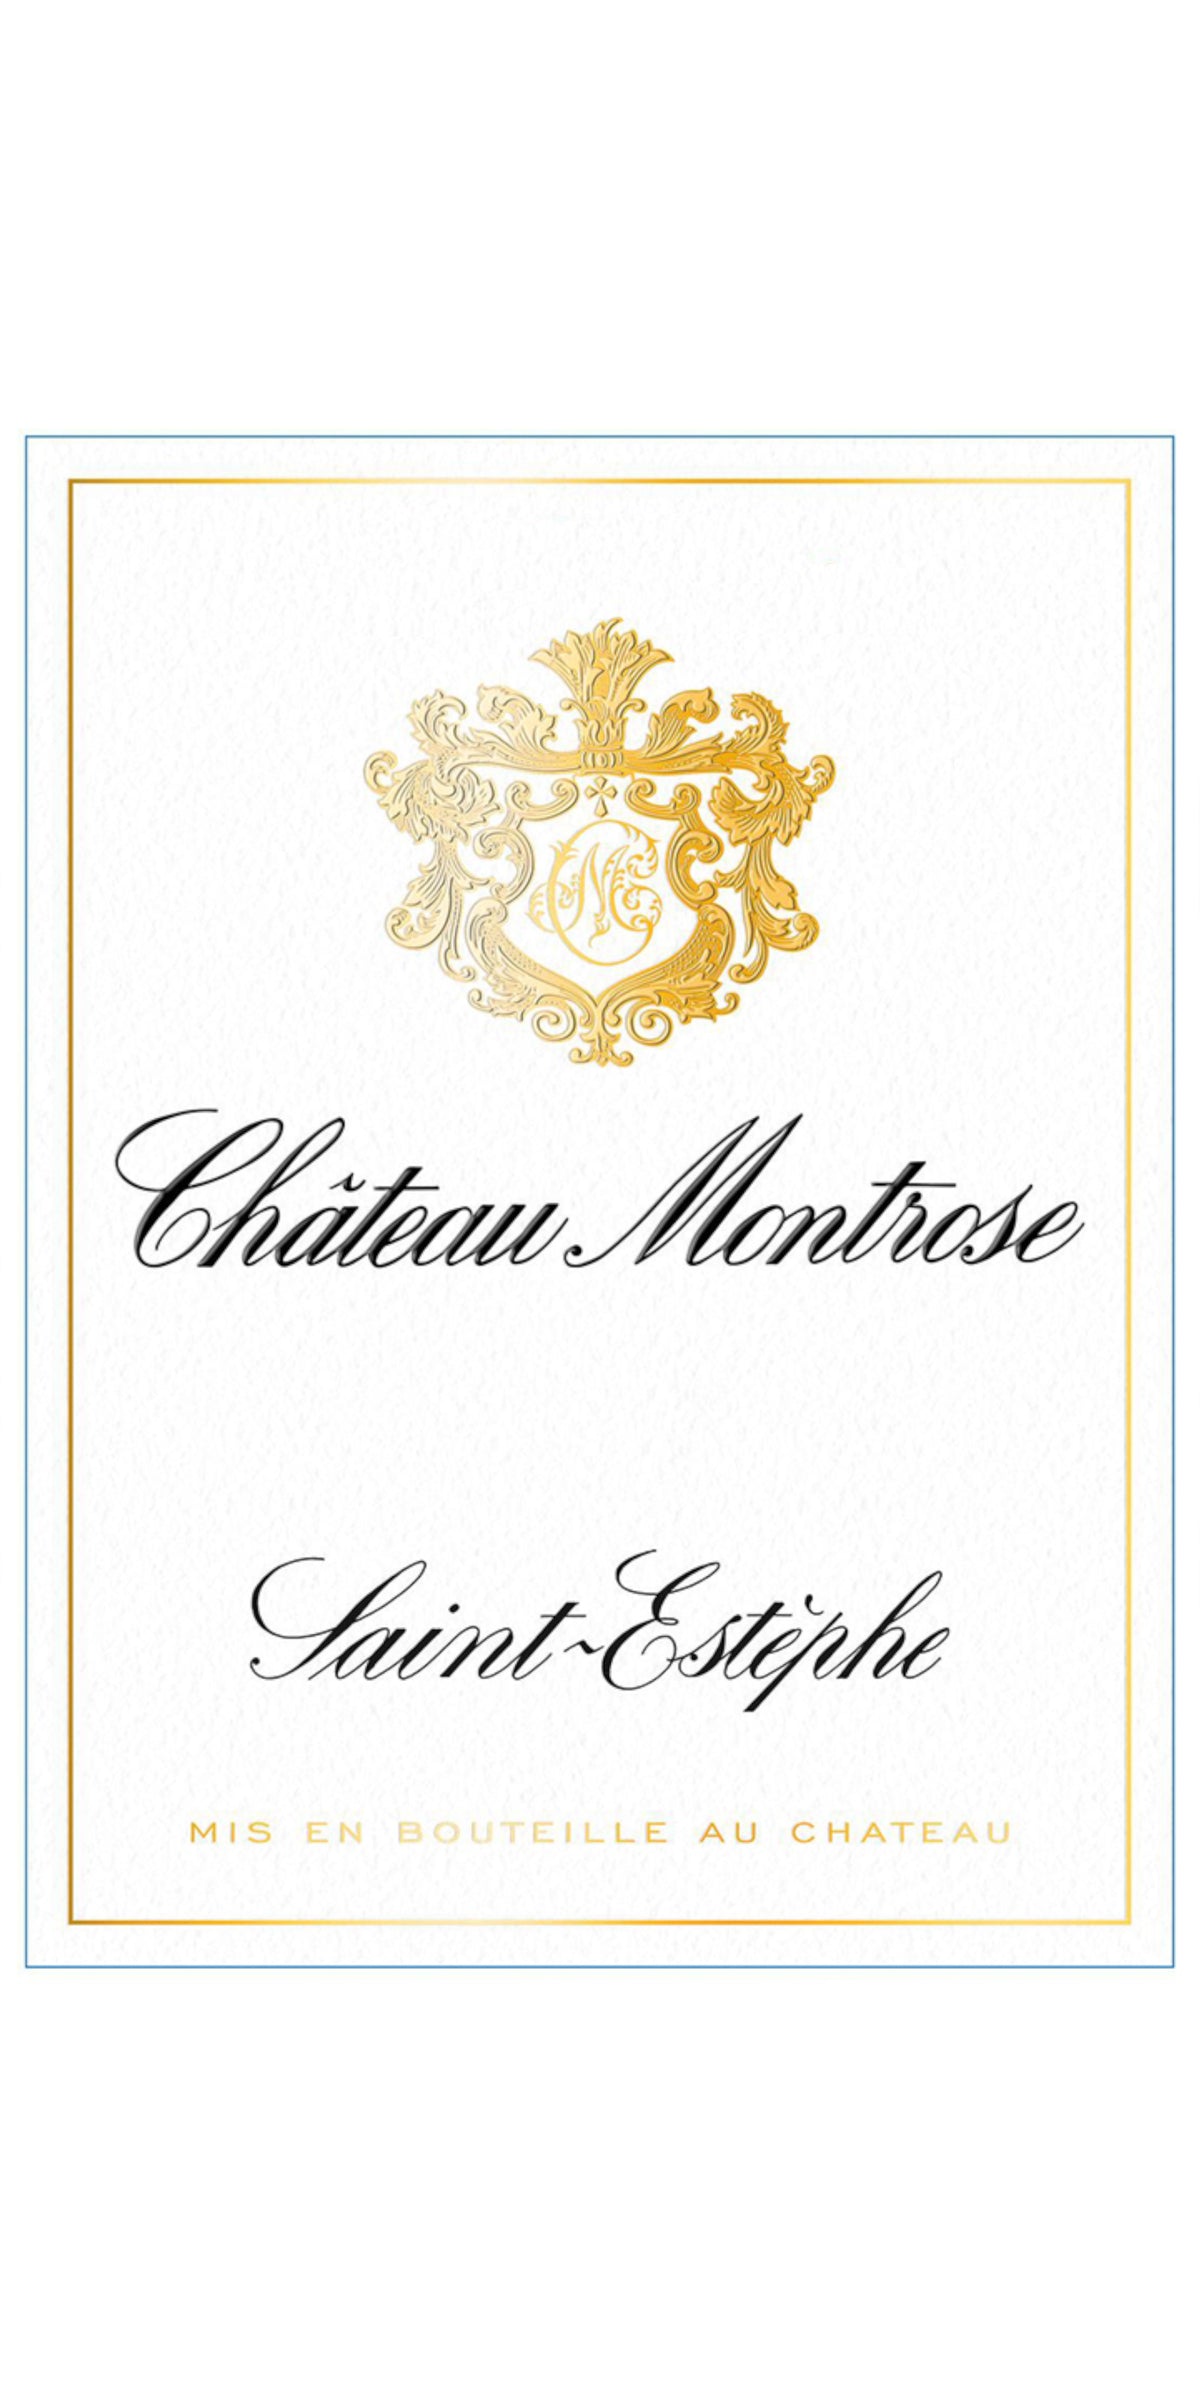 Chateau Montrose, St Estephe, 1996, Double Magnum, 300cl